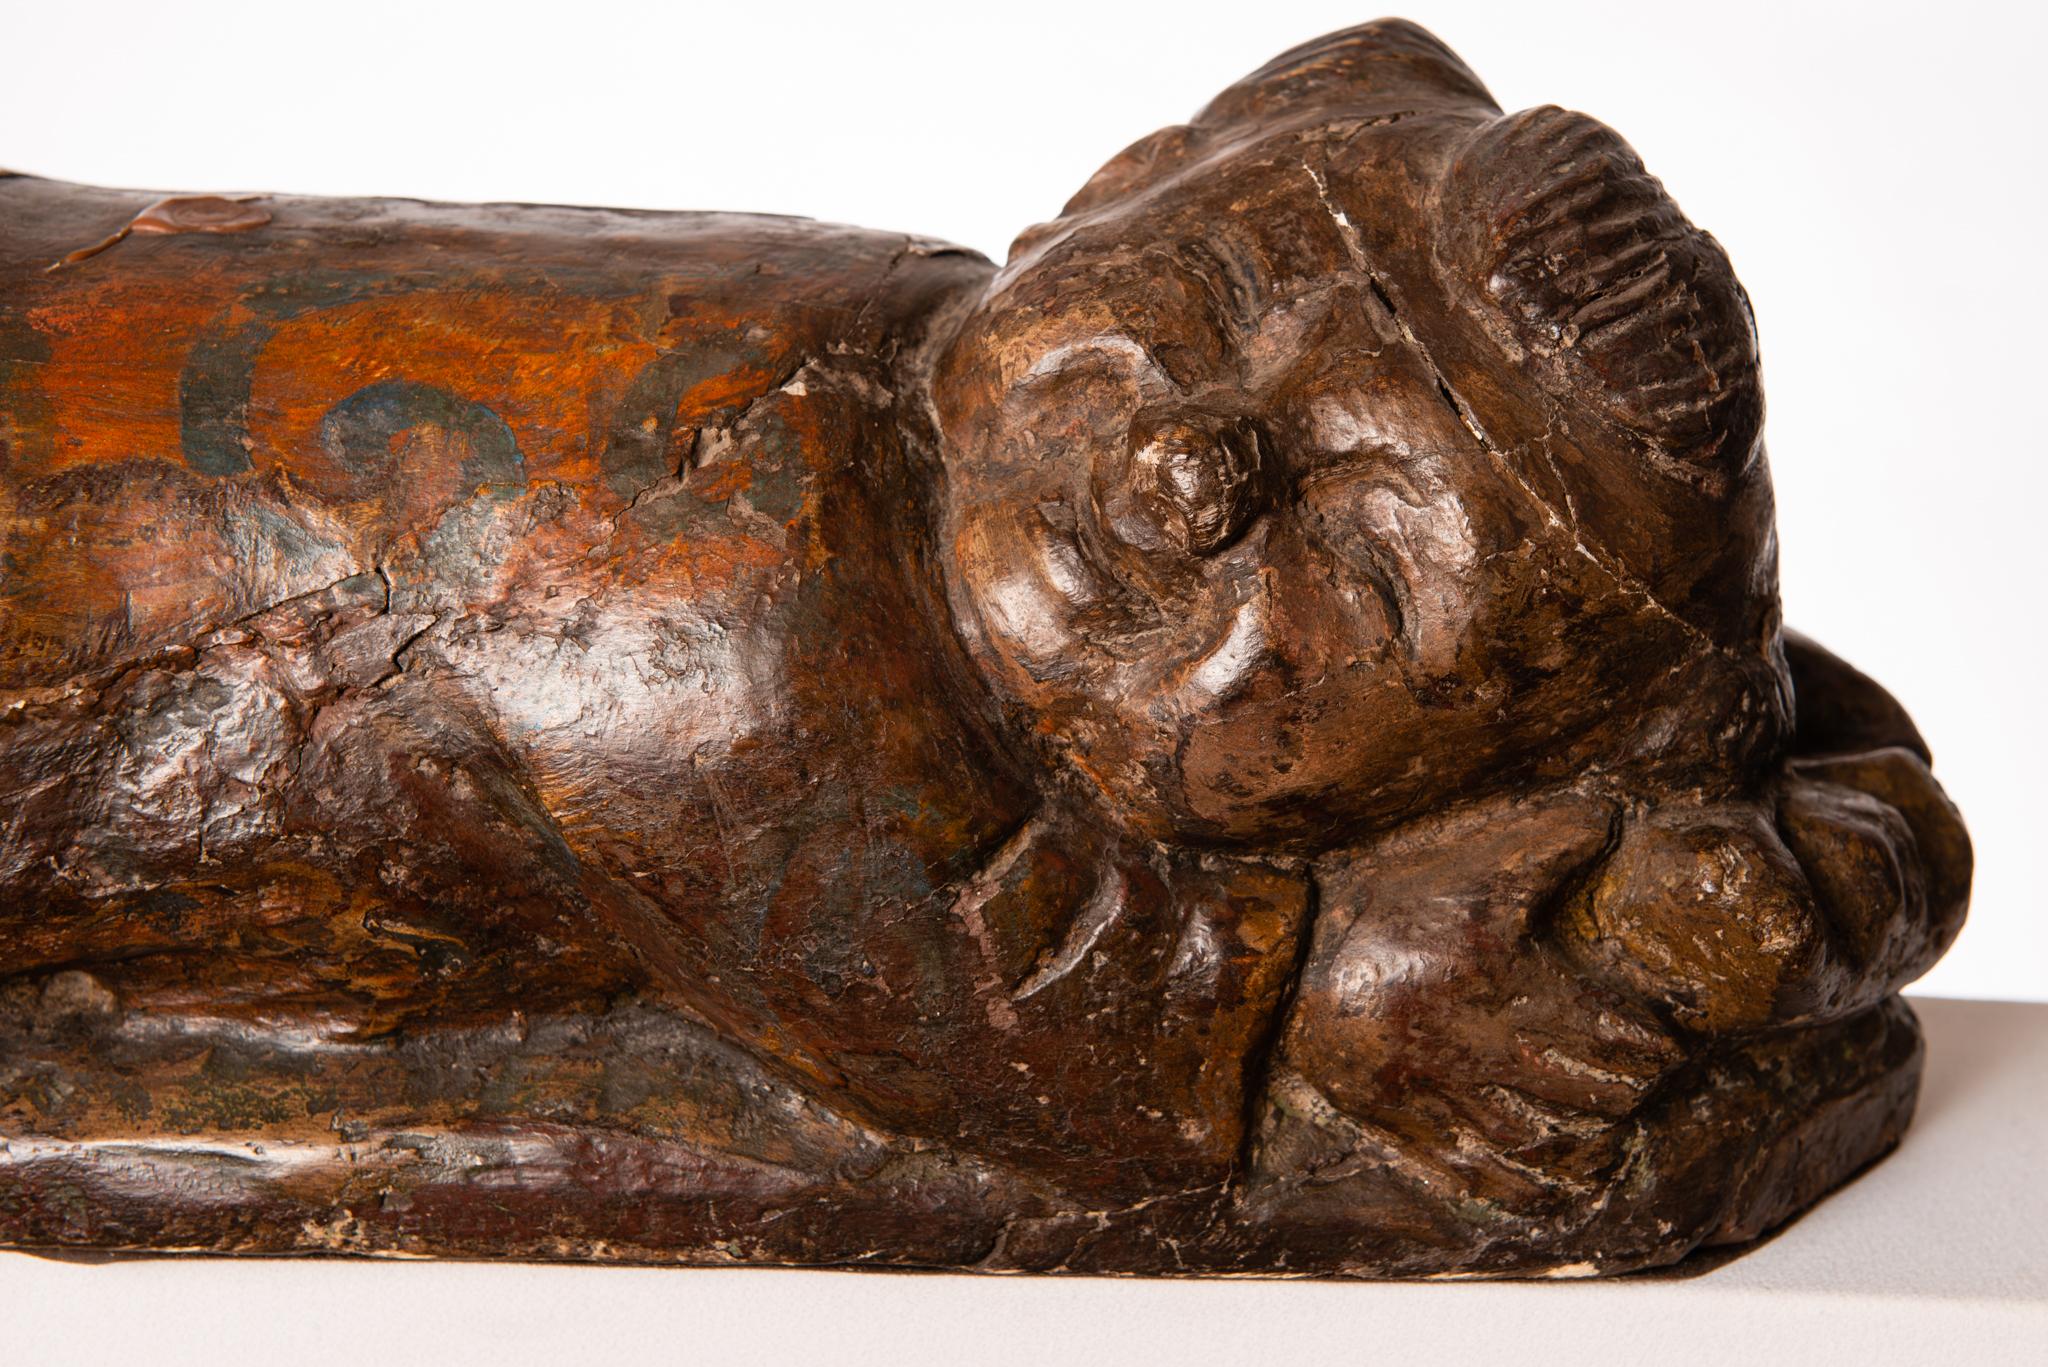 Angenehme Holzstatue mit einem lächelnden schlafenden chinesischen Baby, dessen Kopf auf einem Kissen ruht.
Er wurde als Kopfstütze für die aufwendigen Frisuren der chinesischen Adligen verwendet.
O/5303.